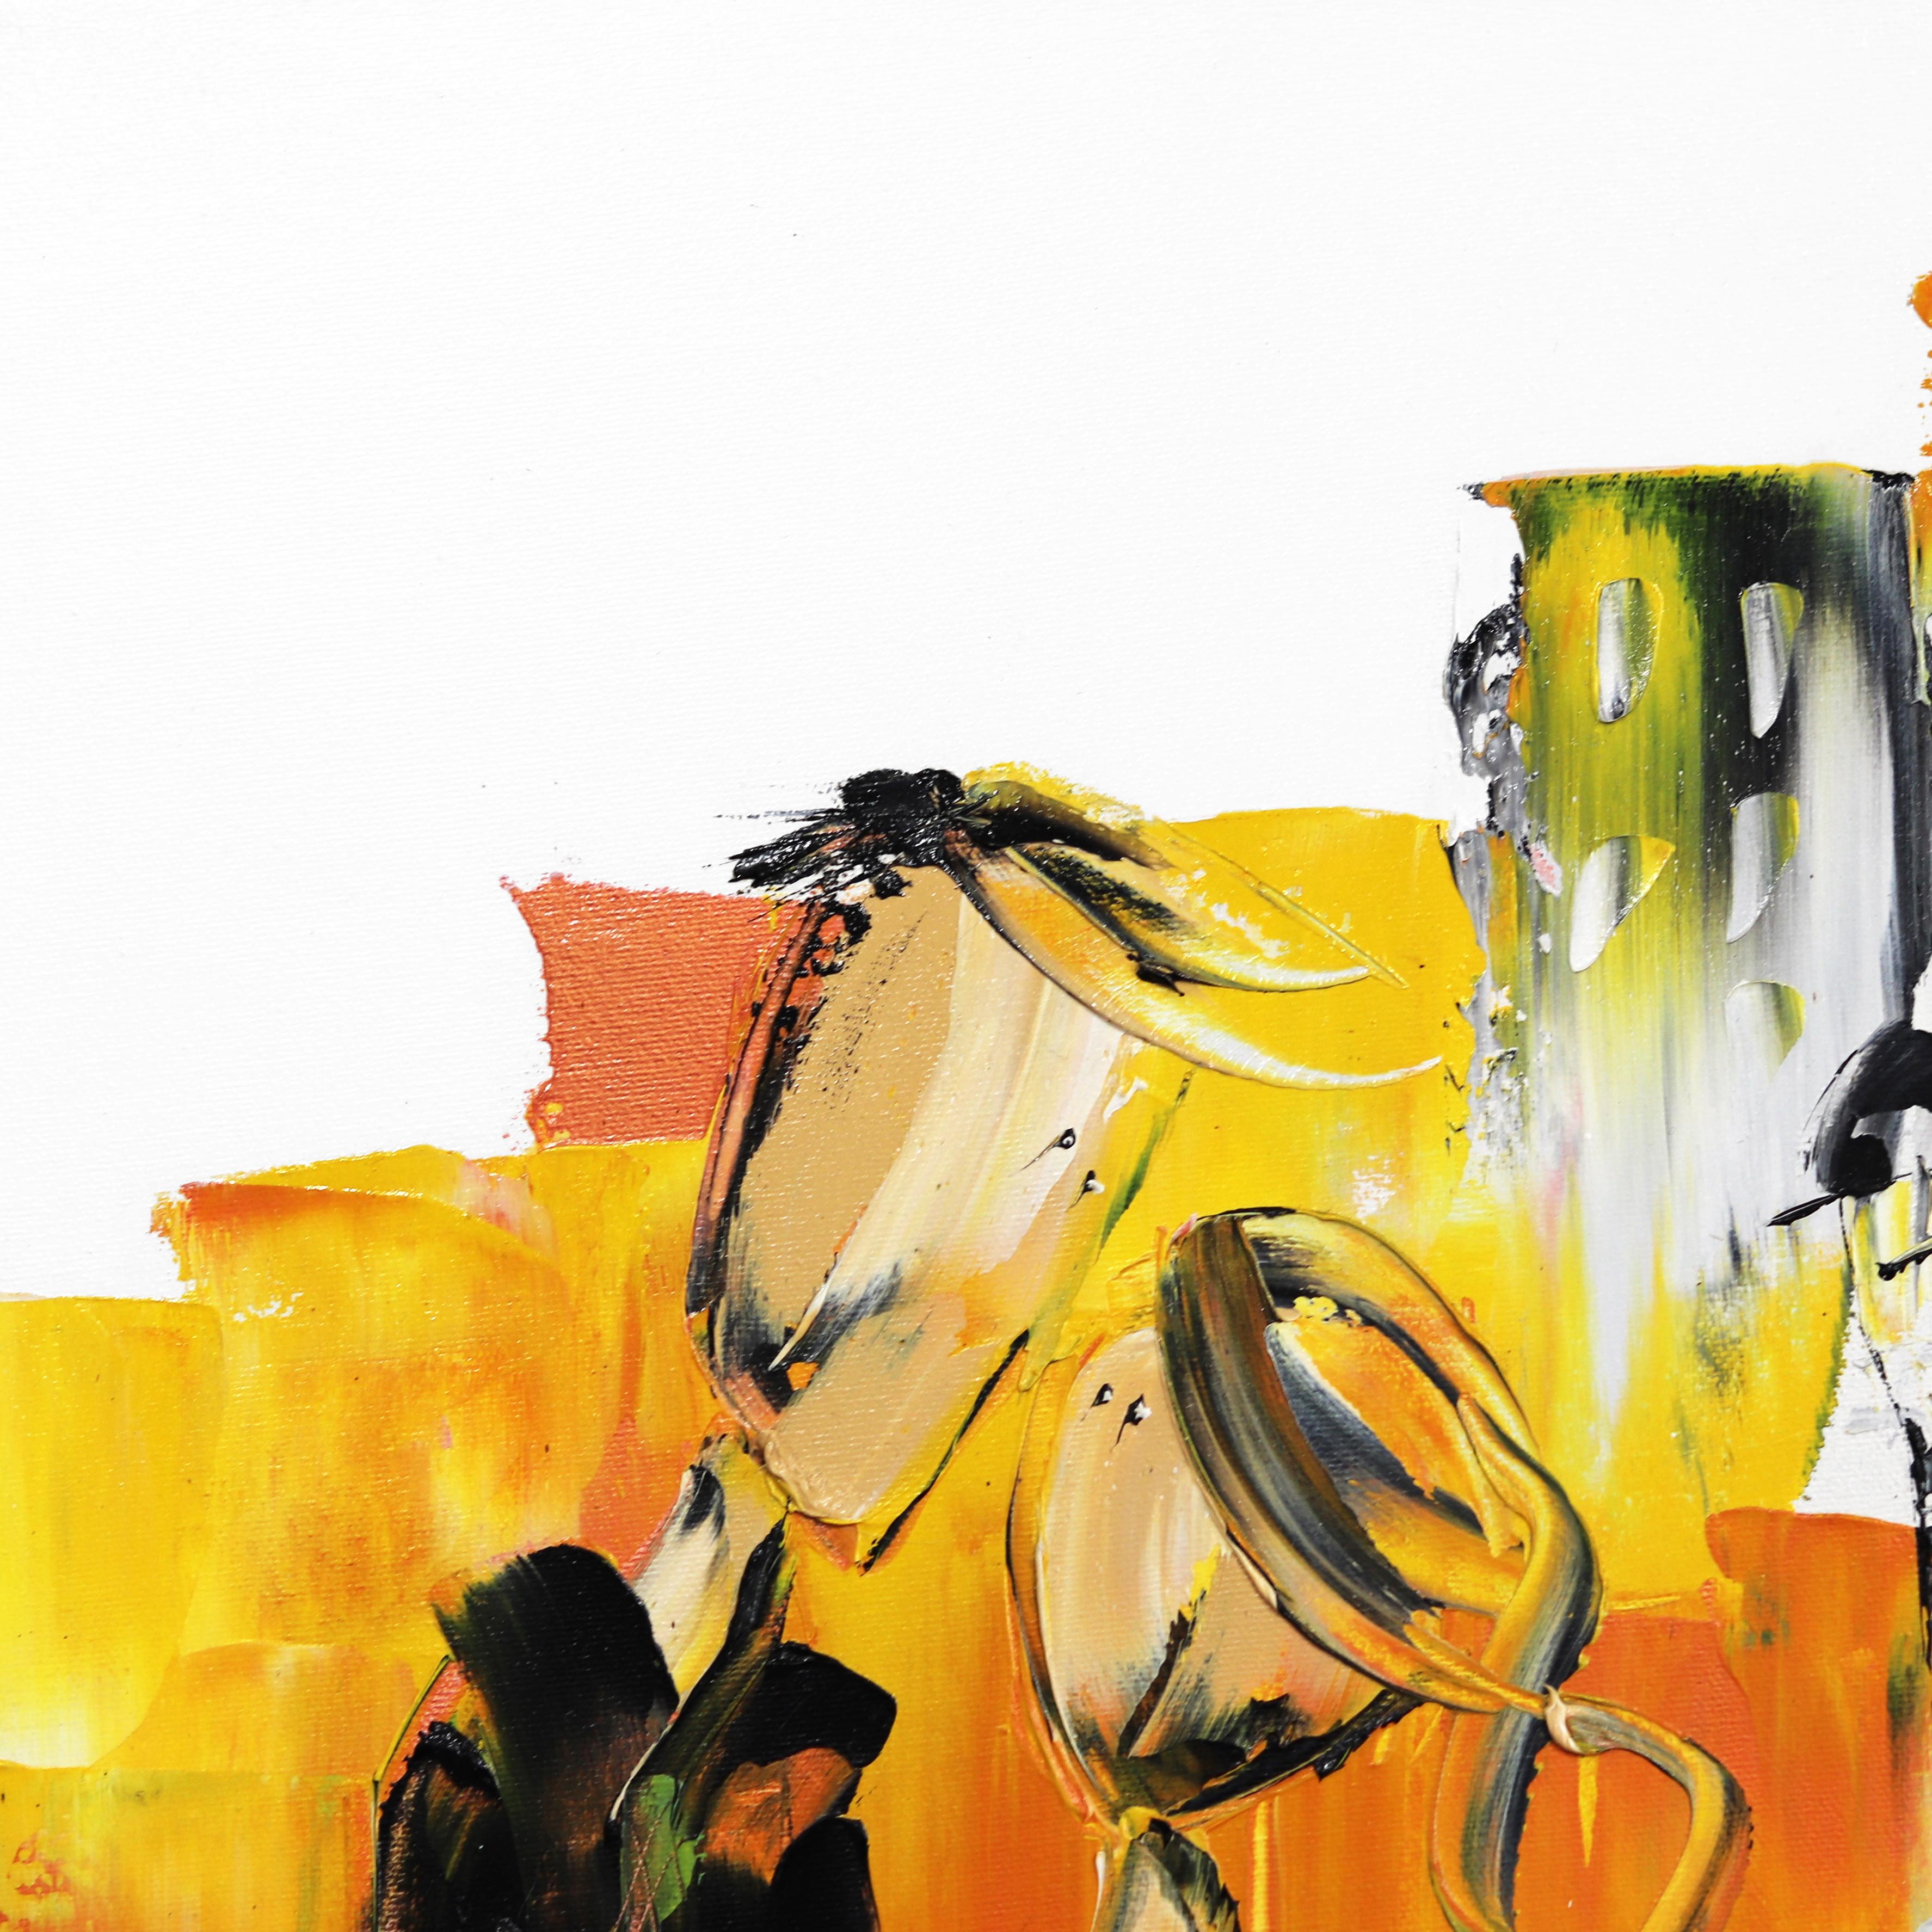 Die französisch-kanadische Malerin Zabel lässt sich von ihrer Leidenschaft für das Leben und ihren Geist leiten und schafft lebendige Kunstwerke voller Romantik und eindringlicher Texturen. In der Überzeugung, dass es in der Kunst vor allem um